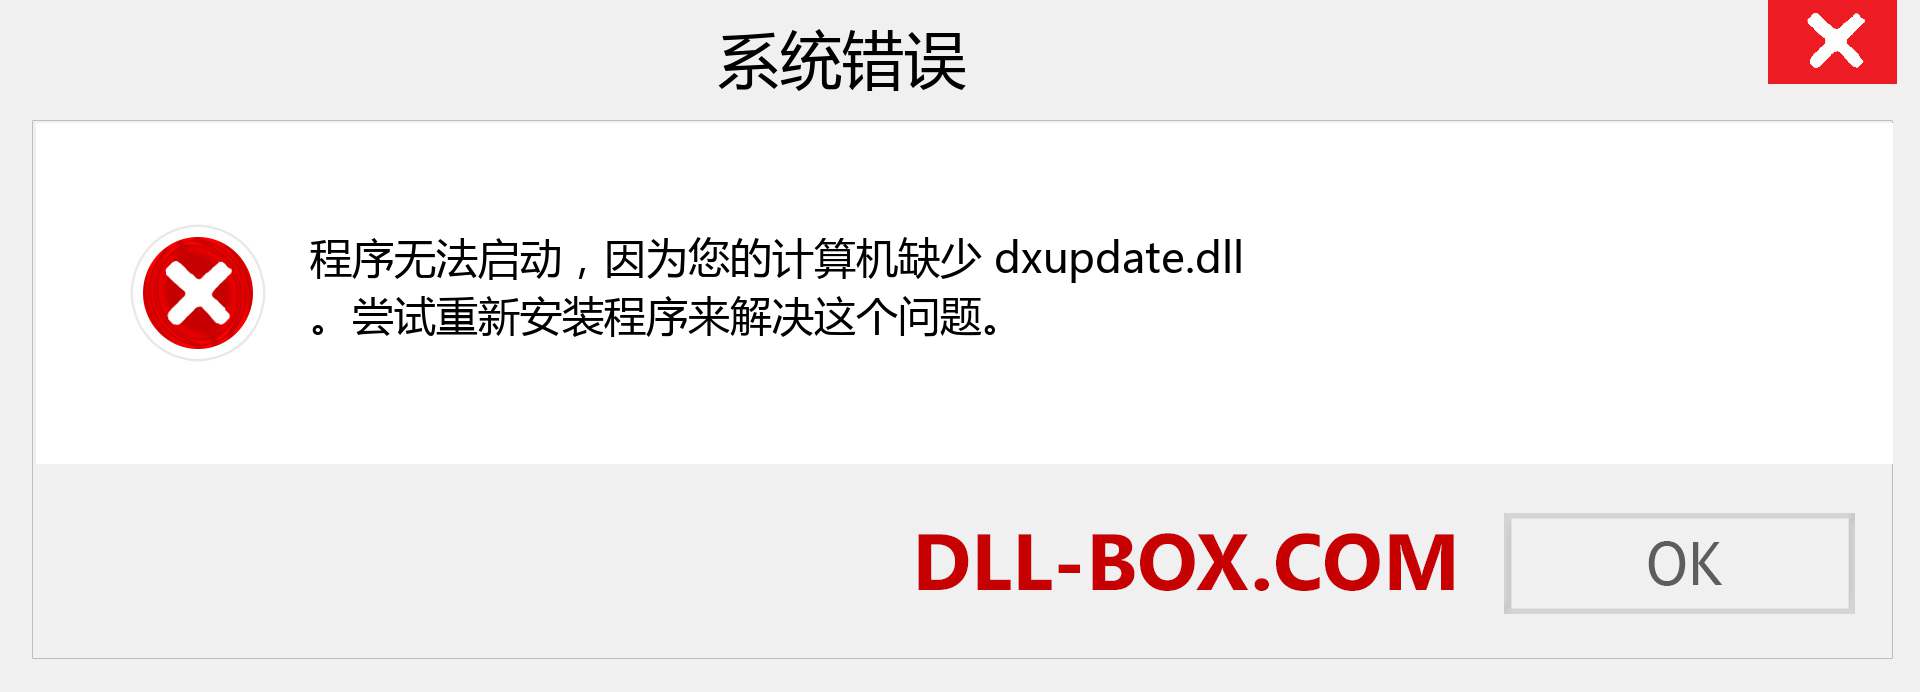 dxupdate.dll 文件丢失？。 适用于 Windows 7、8、10 的下载 - 修复 Windows、照片、图像上的 dxupdate dll 丢失错误